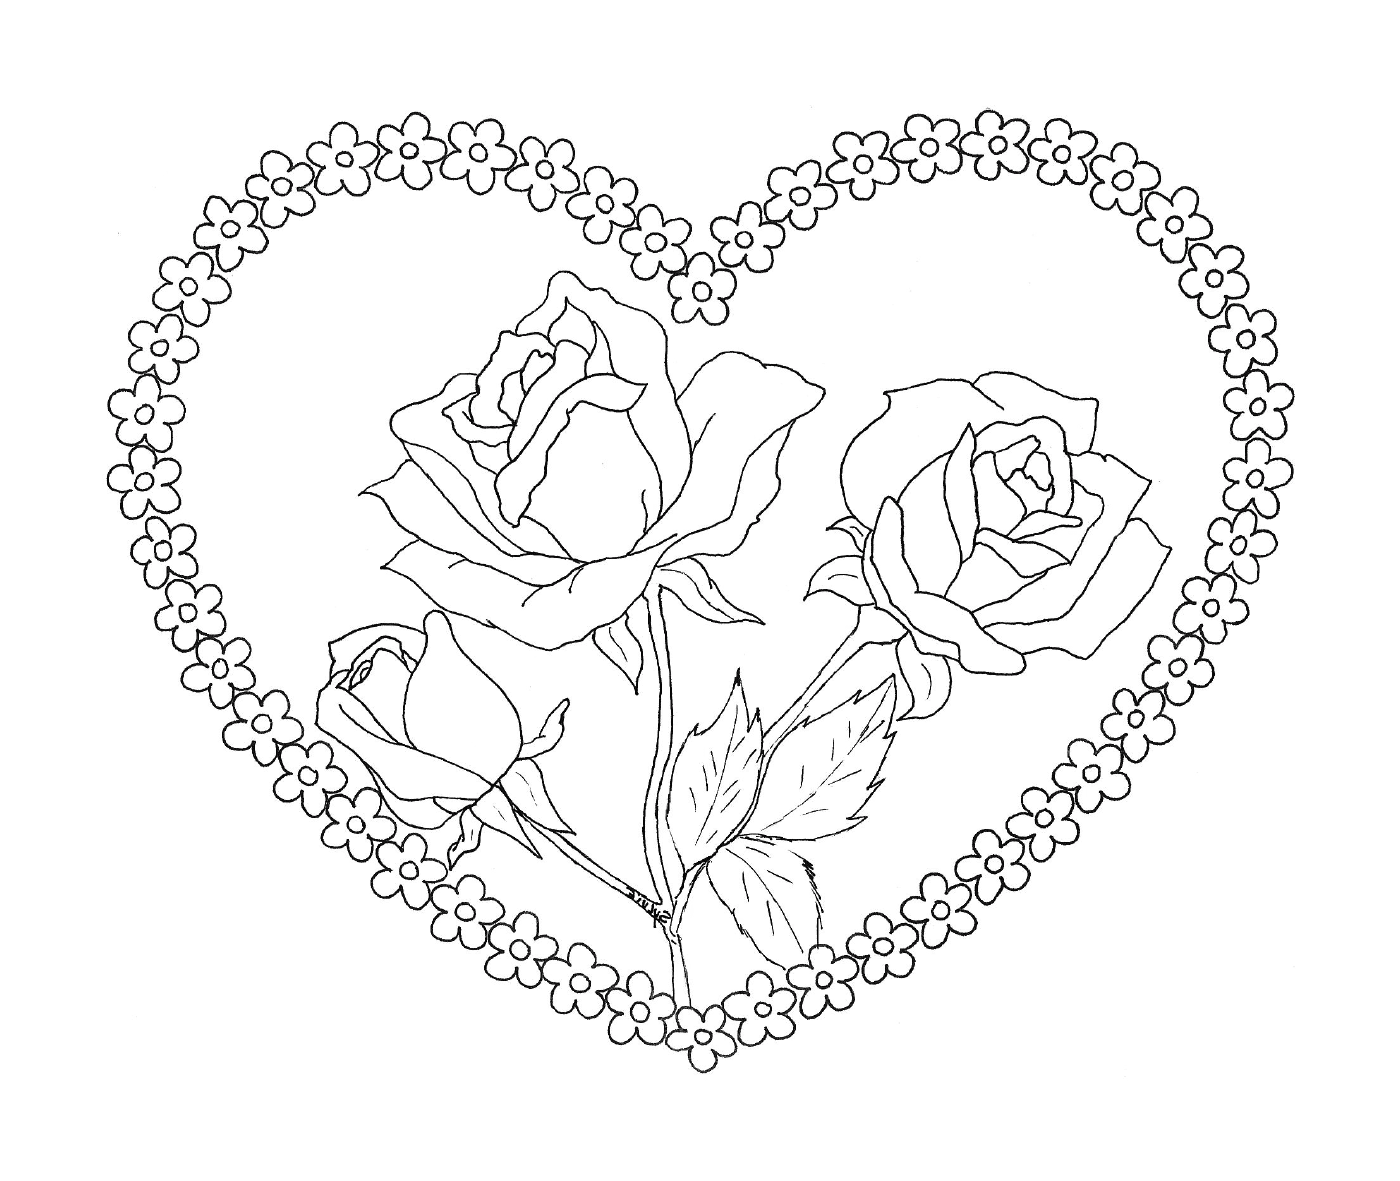  Coração com rosas dentro 